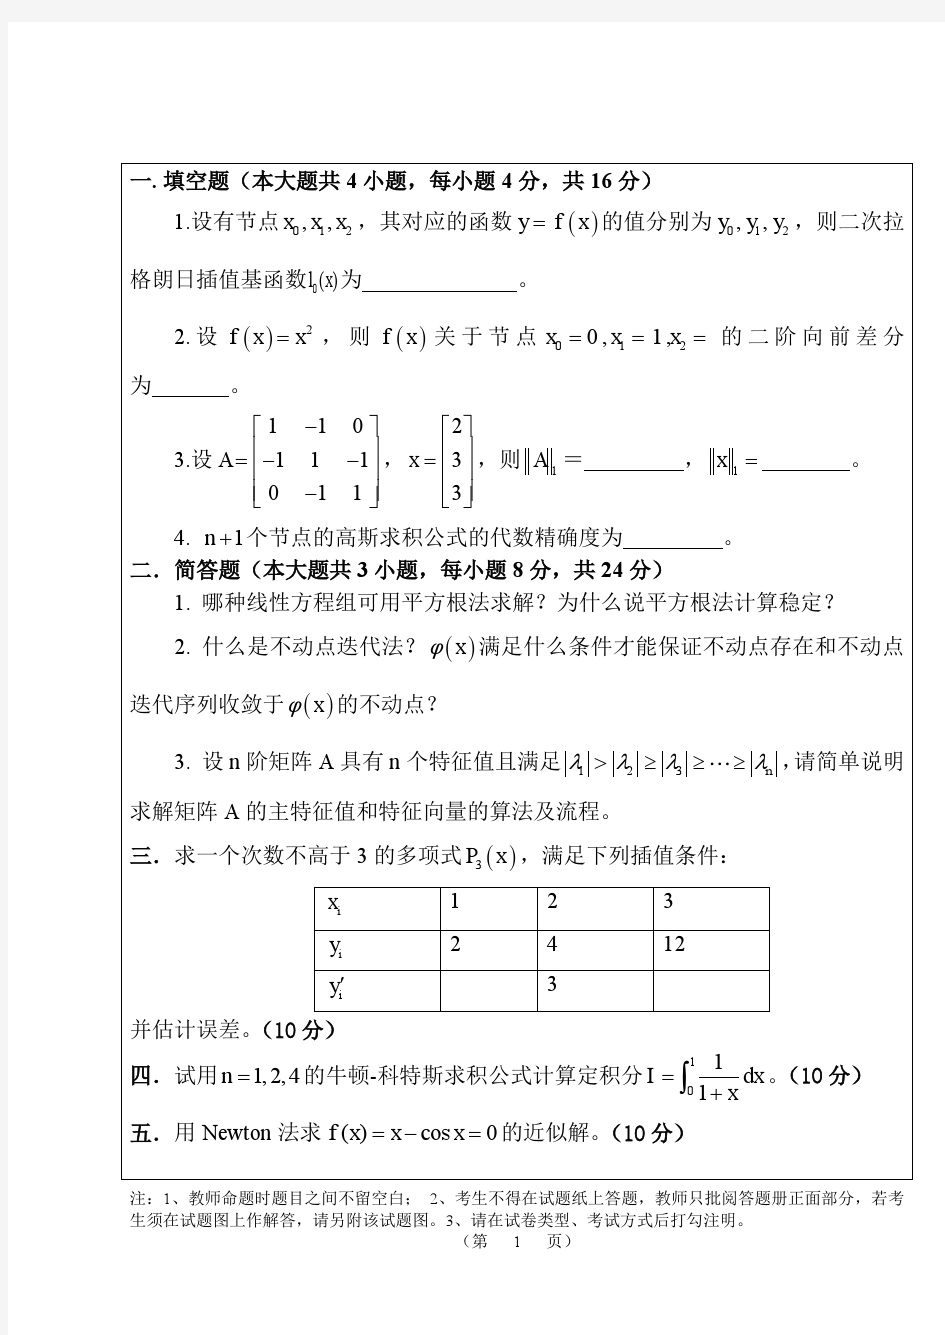 武汉大学数值分析期末考试题目和答案